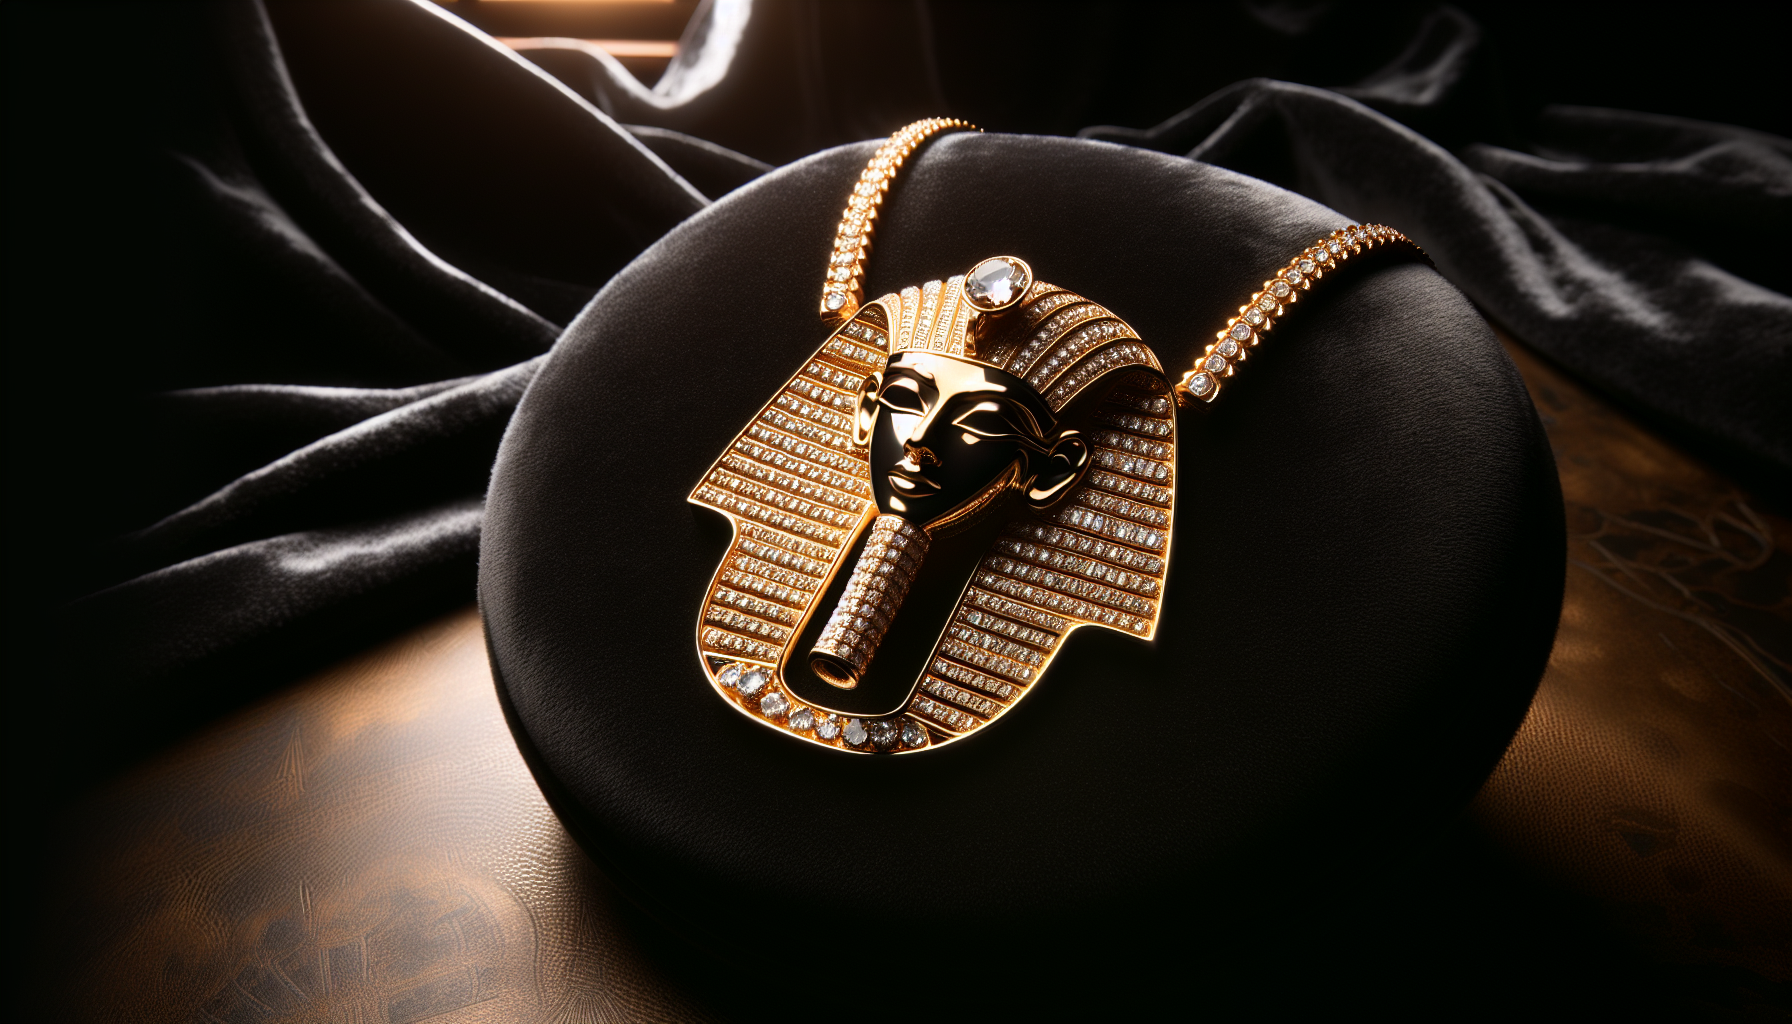 Kanye West's $300,000 Horus chain symbolizing creative power